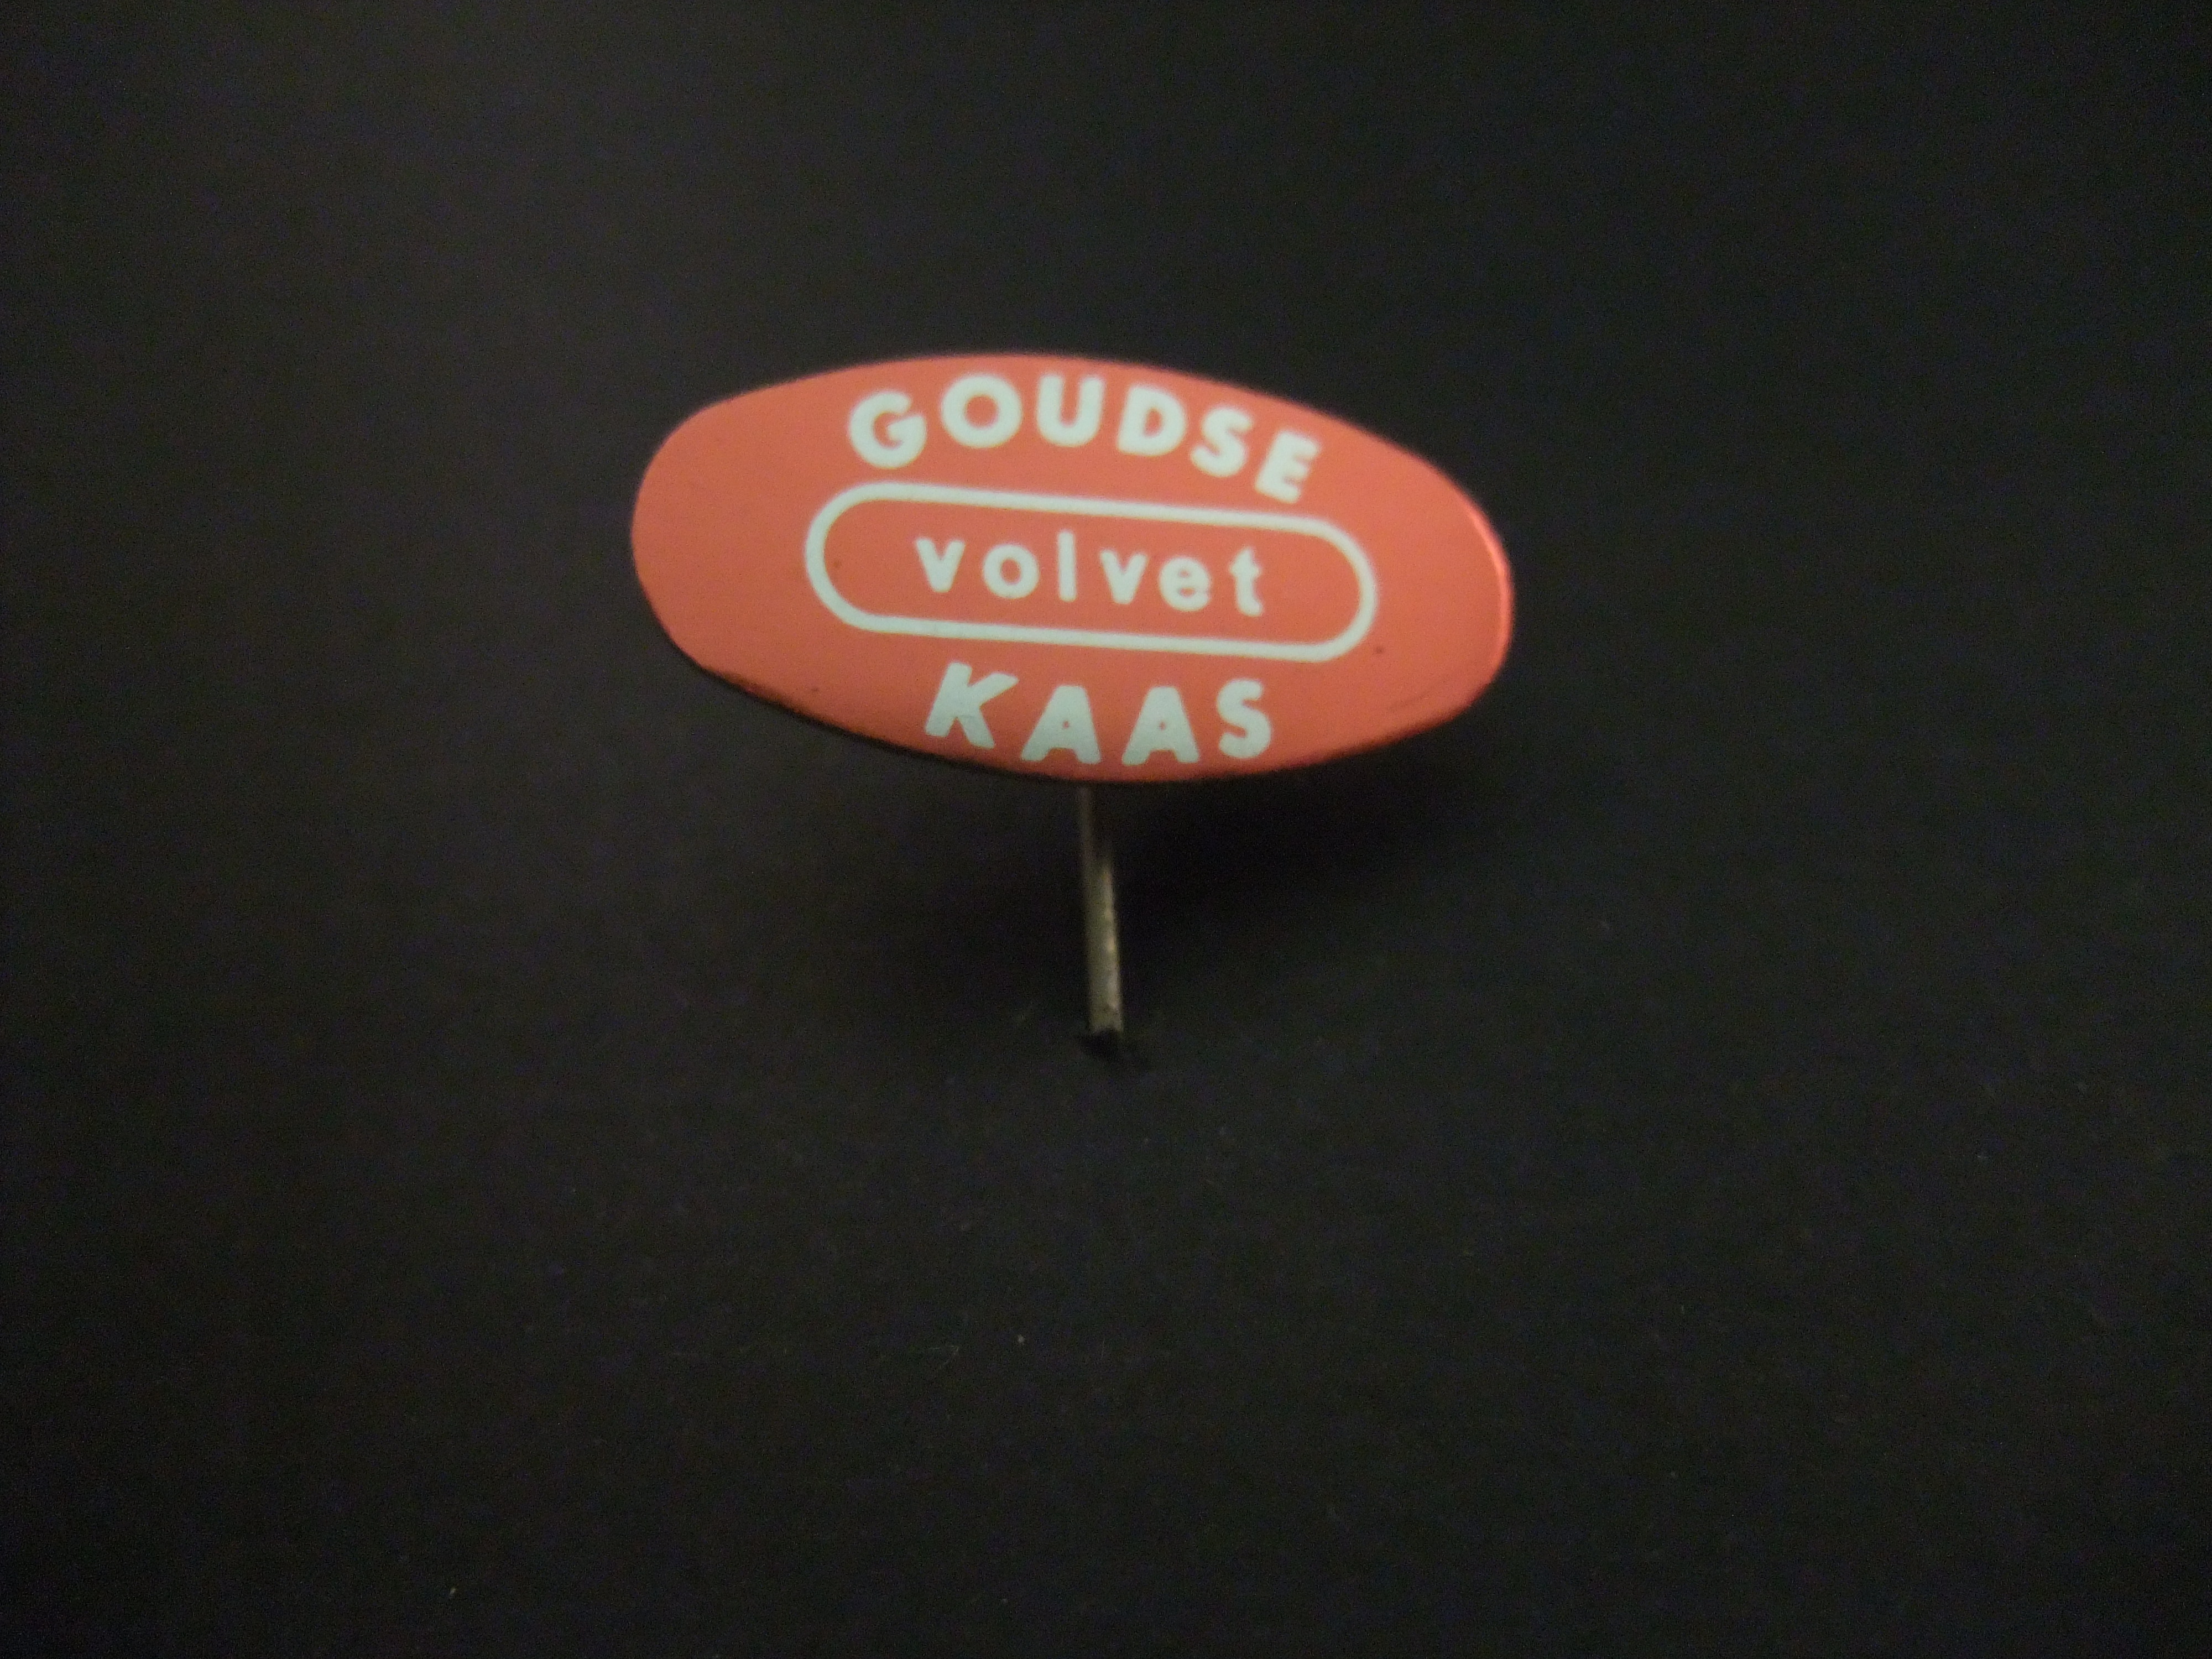 Goudse Volvet Kaas (zuivel) logo rood